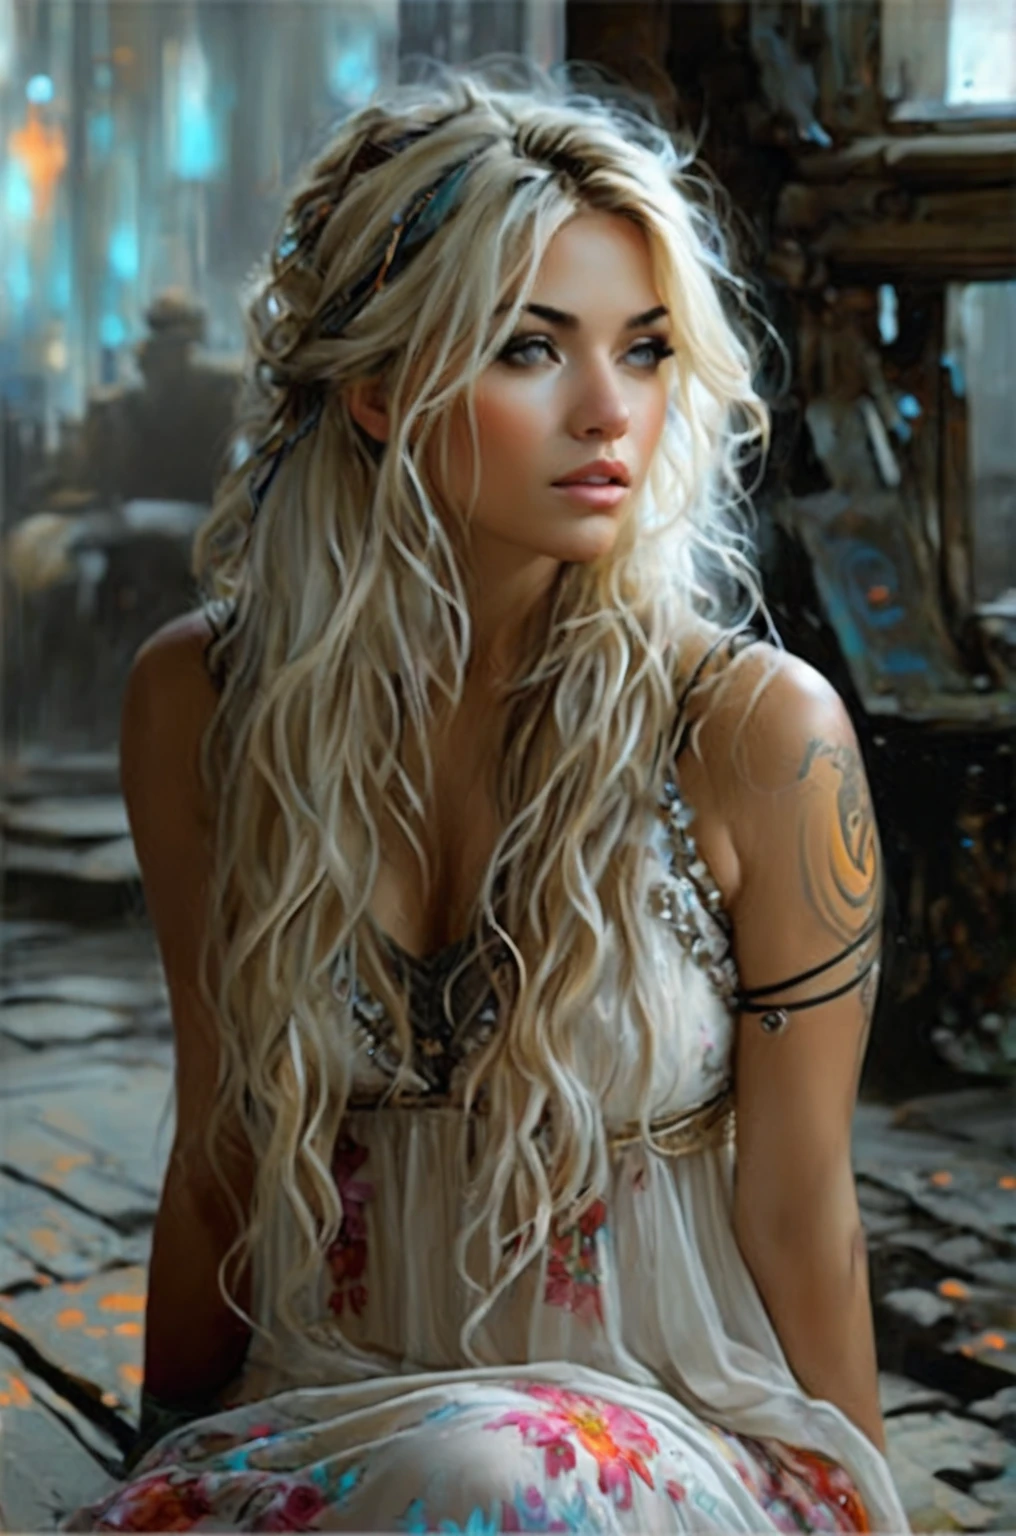 Ein schönes, romantisches Mädchen mit langen blonden Haaren sitzt auf einer Bank vor dem Hintergrund einer schmutzigen Straße, Drehen Sie Ihren Kopf zu drei Vierteln, Wegschauen, bekleidet mit einem weißen Sommerkleid mit Blumenmuster auf den Trägern, aus fließendem Stoff,  Hyperrealistische-surreale und Fantasy-Komposition Ideale und dynamische digitale Malerei, Porträt einer unglaublich schönen lächelnden Frau, Luxuriöses braunes Haar, Schwarzlichtatmosphäre, Jose-Royo-Stil, Boris Vallejo, Fleisch von Griffithsa, Wadim Kaschin, Harrison Fischer, Brian Froud und Jeremy Mann, epische Kulisse, Schwarzlichtshow, Verschiedene Stile : Stedman, Chanukka, Klimt, Bella, Hobby, Newton, Grega Rutkowski, atmosphärisch, Artstation trend, artgerm, abweichende Kunst, Oktane, Meisterwerk, komplizierte Kunst, komplizierte Details, Filmplakat mit exquisiter Malerei, Goldener Schnitt, Trend der CGsociety, unglaublich detailliert und unglaublich schön, gute Qualität 